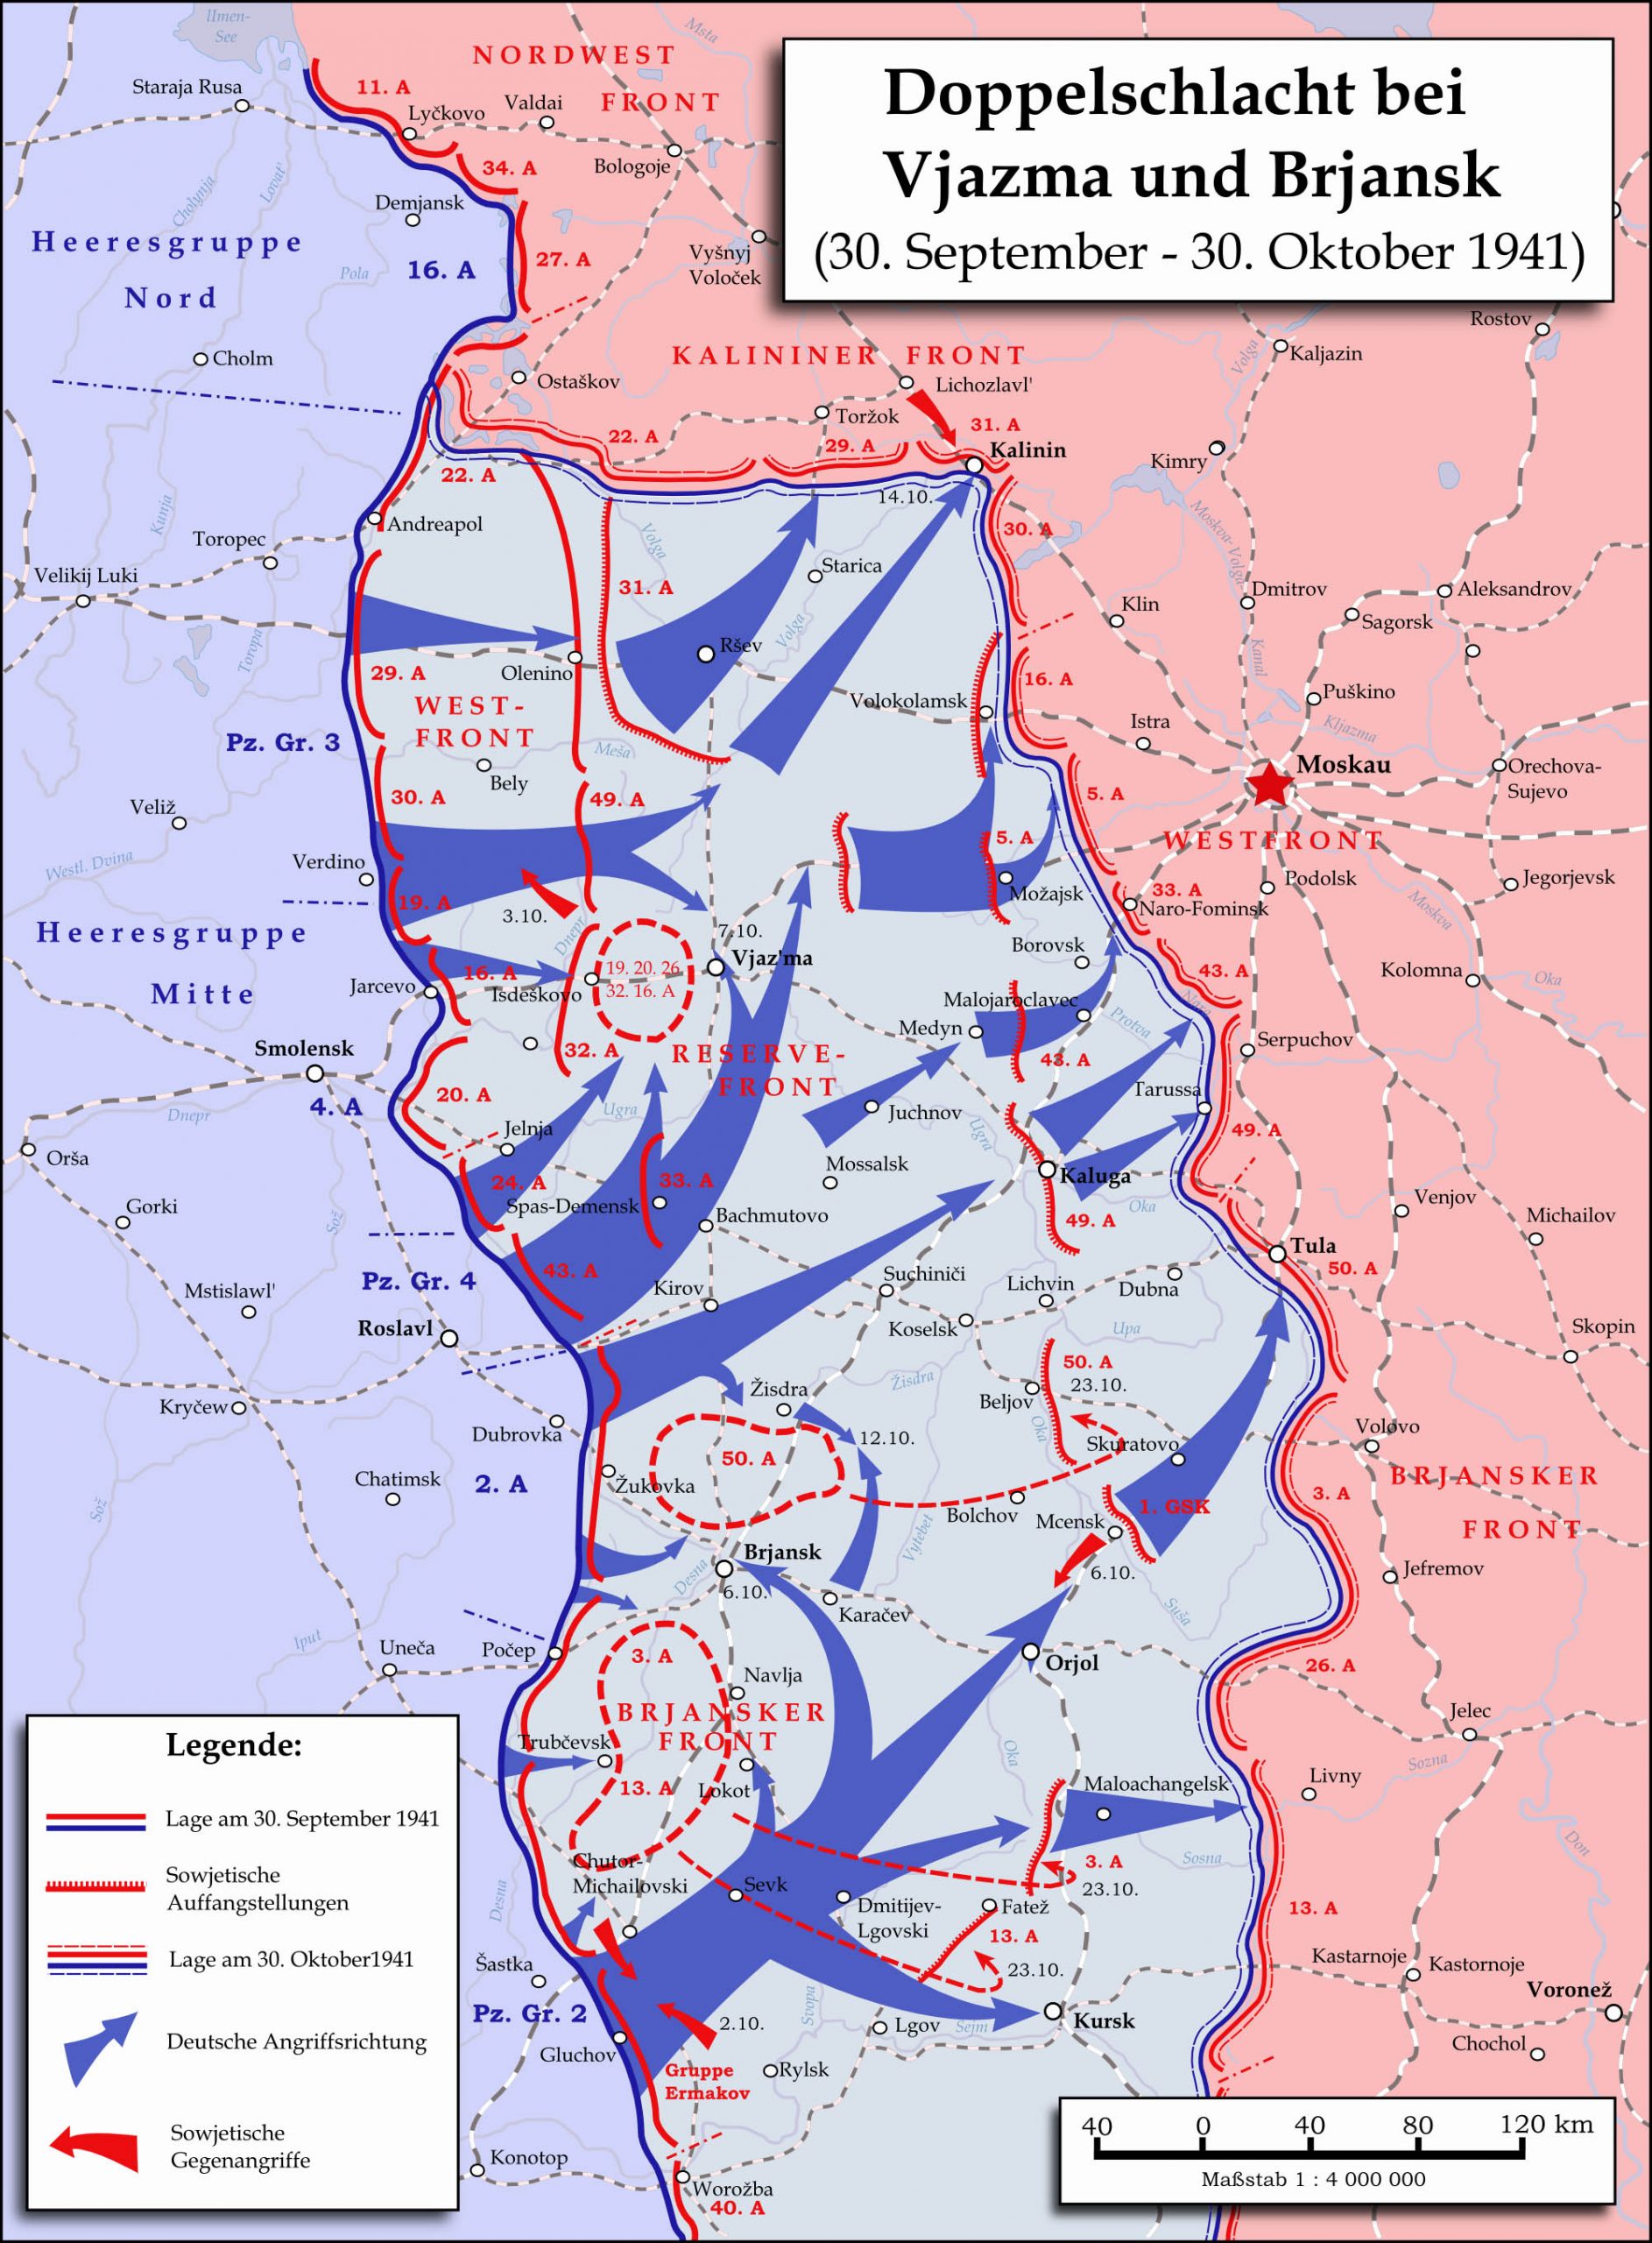 ยุทธการกรุงมอสโก (Battle of Moscow) ความพ่ายแพ้ของกองทัพนาซีเยอรมัน